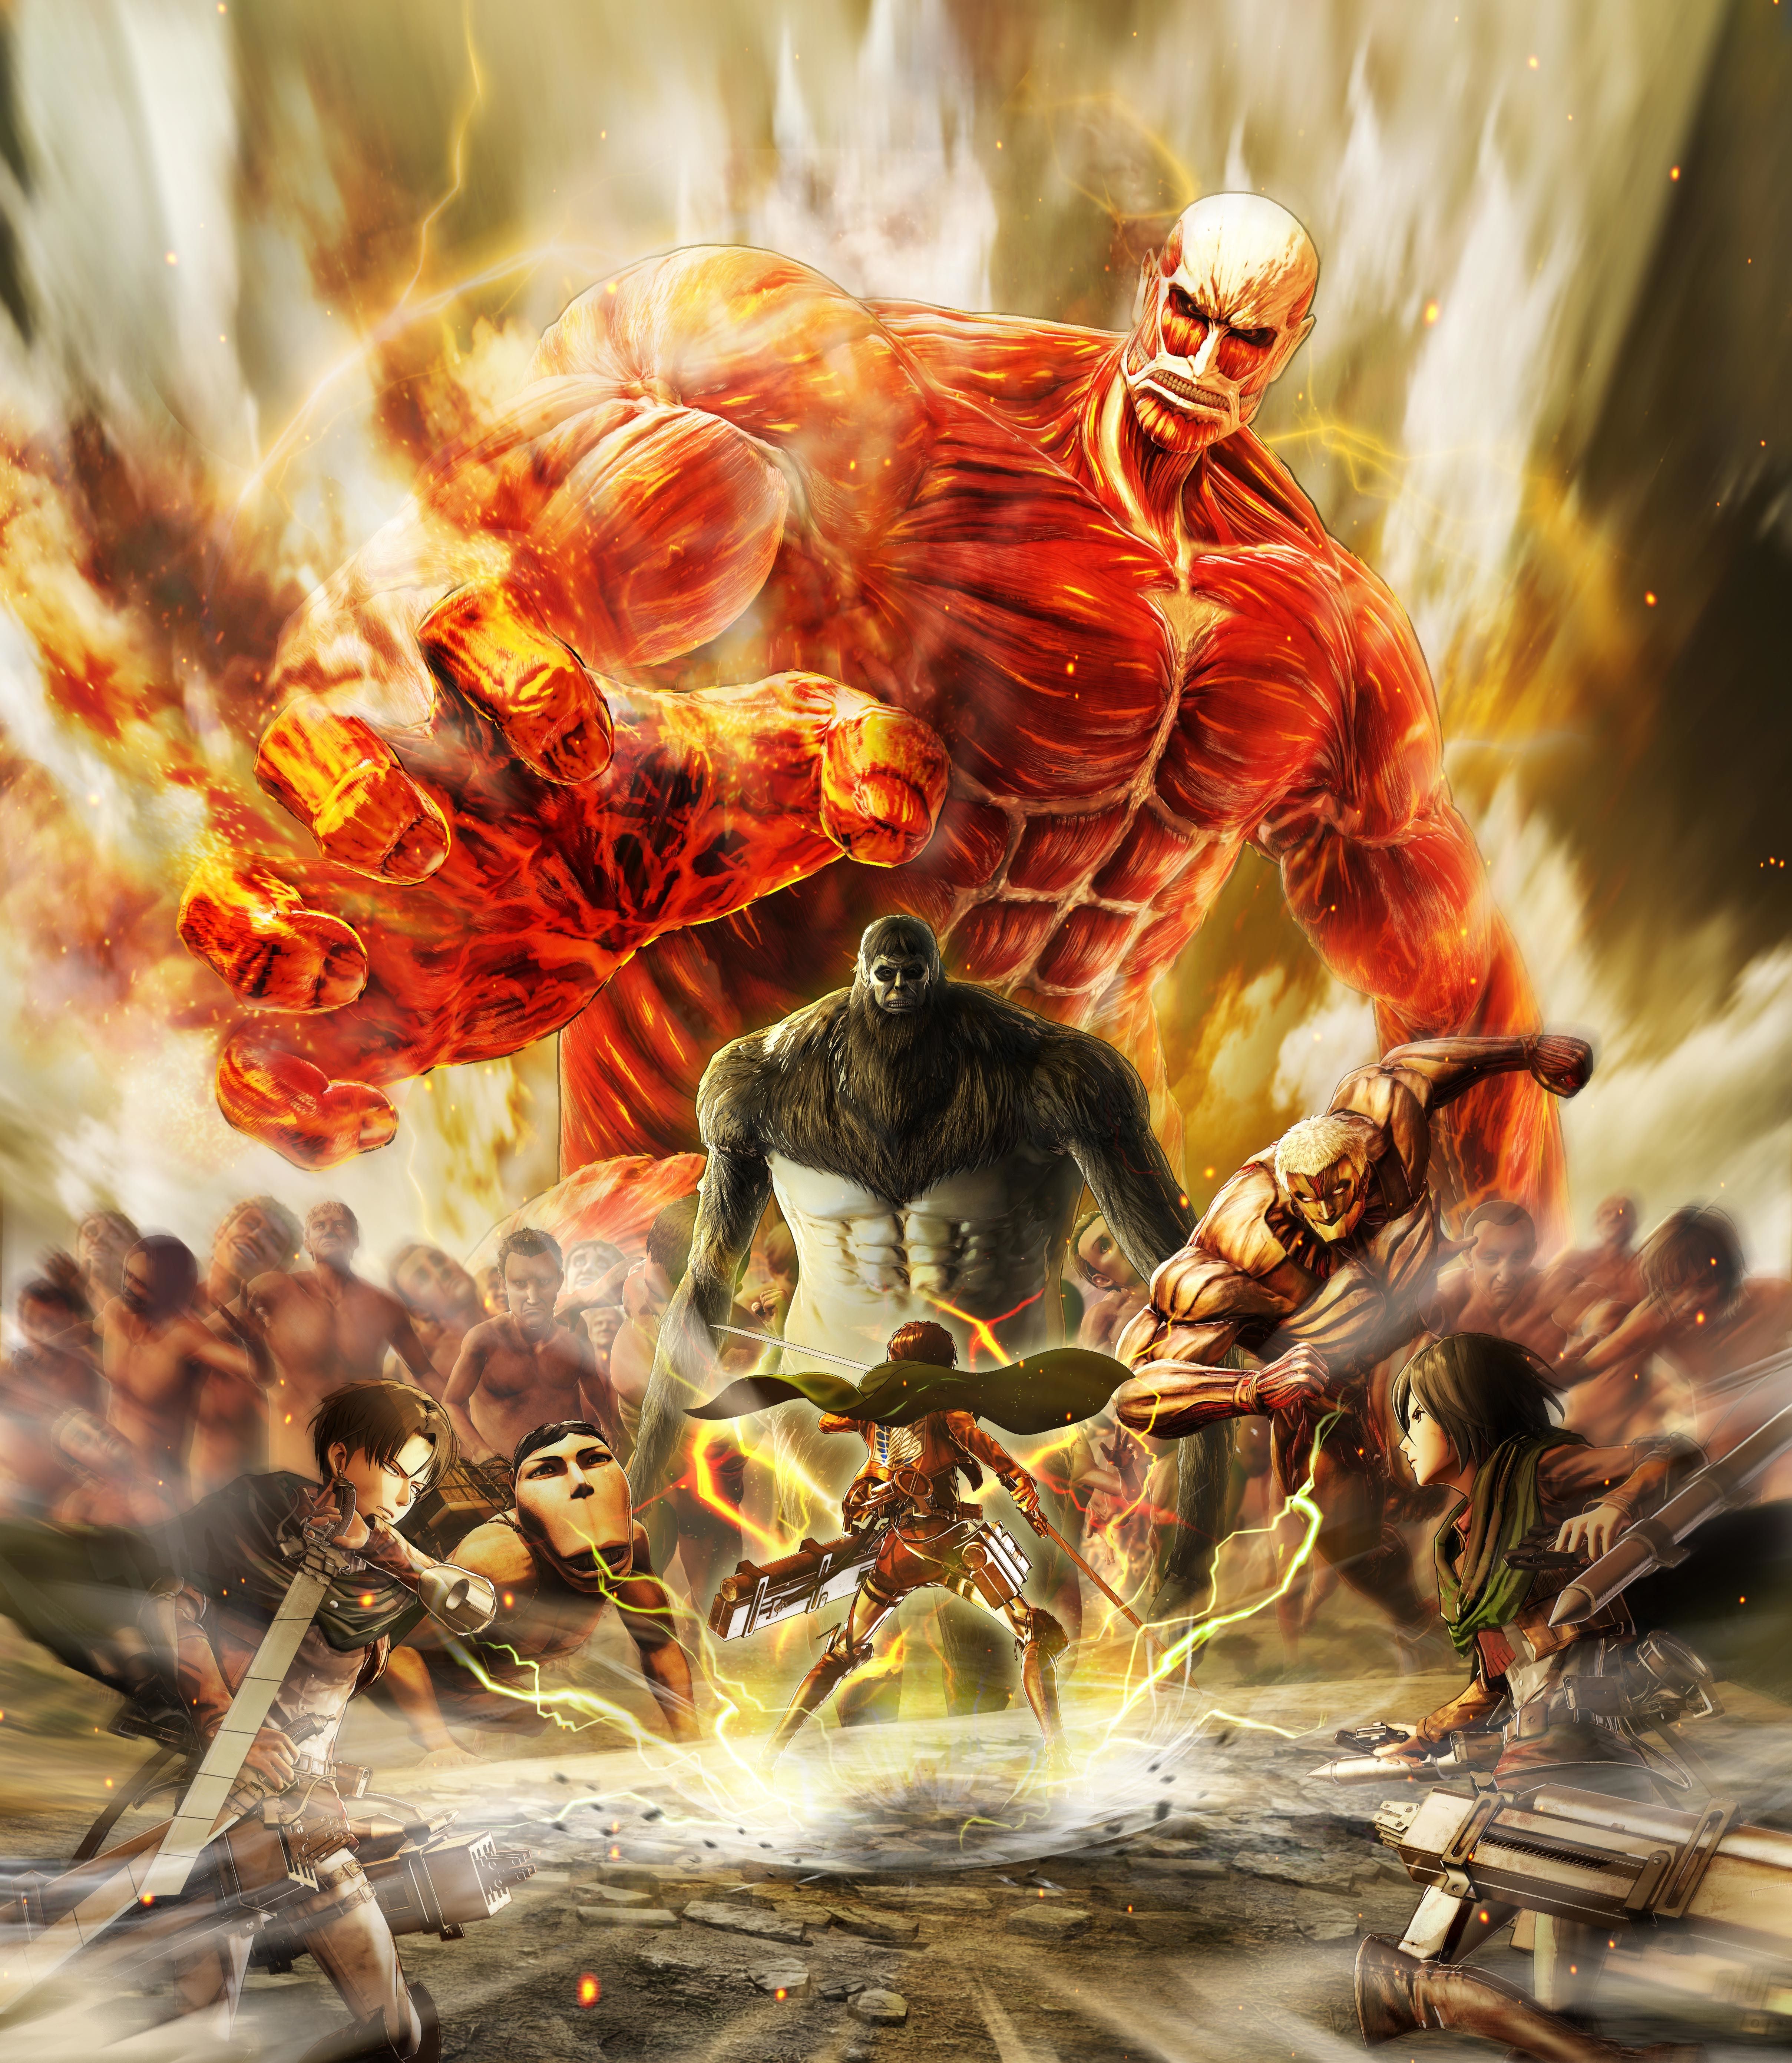 Attack on Titan Final Battle Wallpaper, HD Games 4K Wallpaper